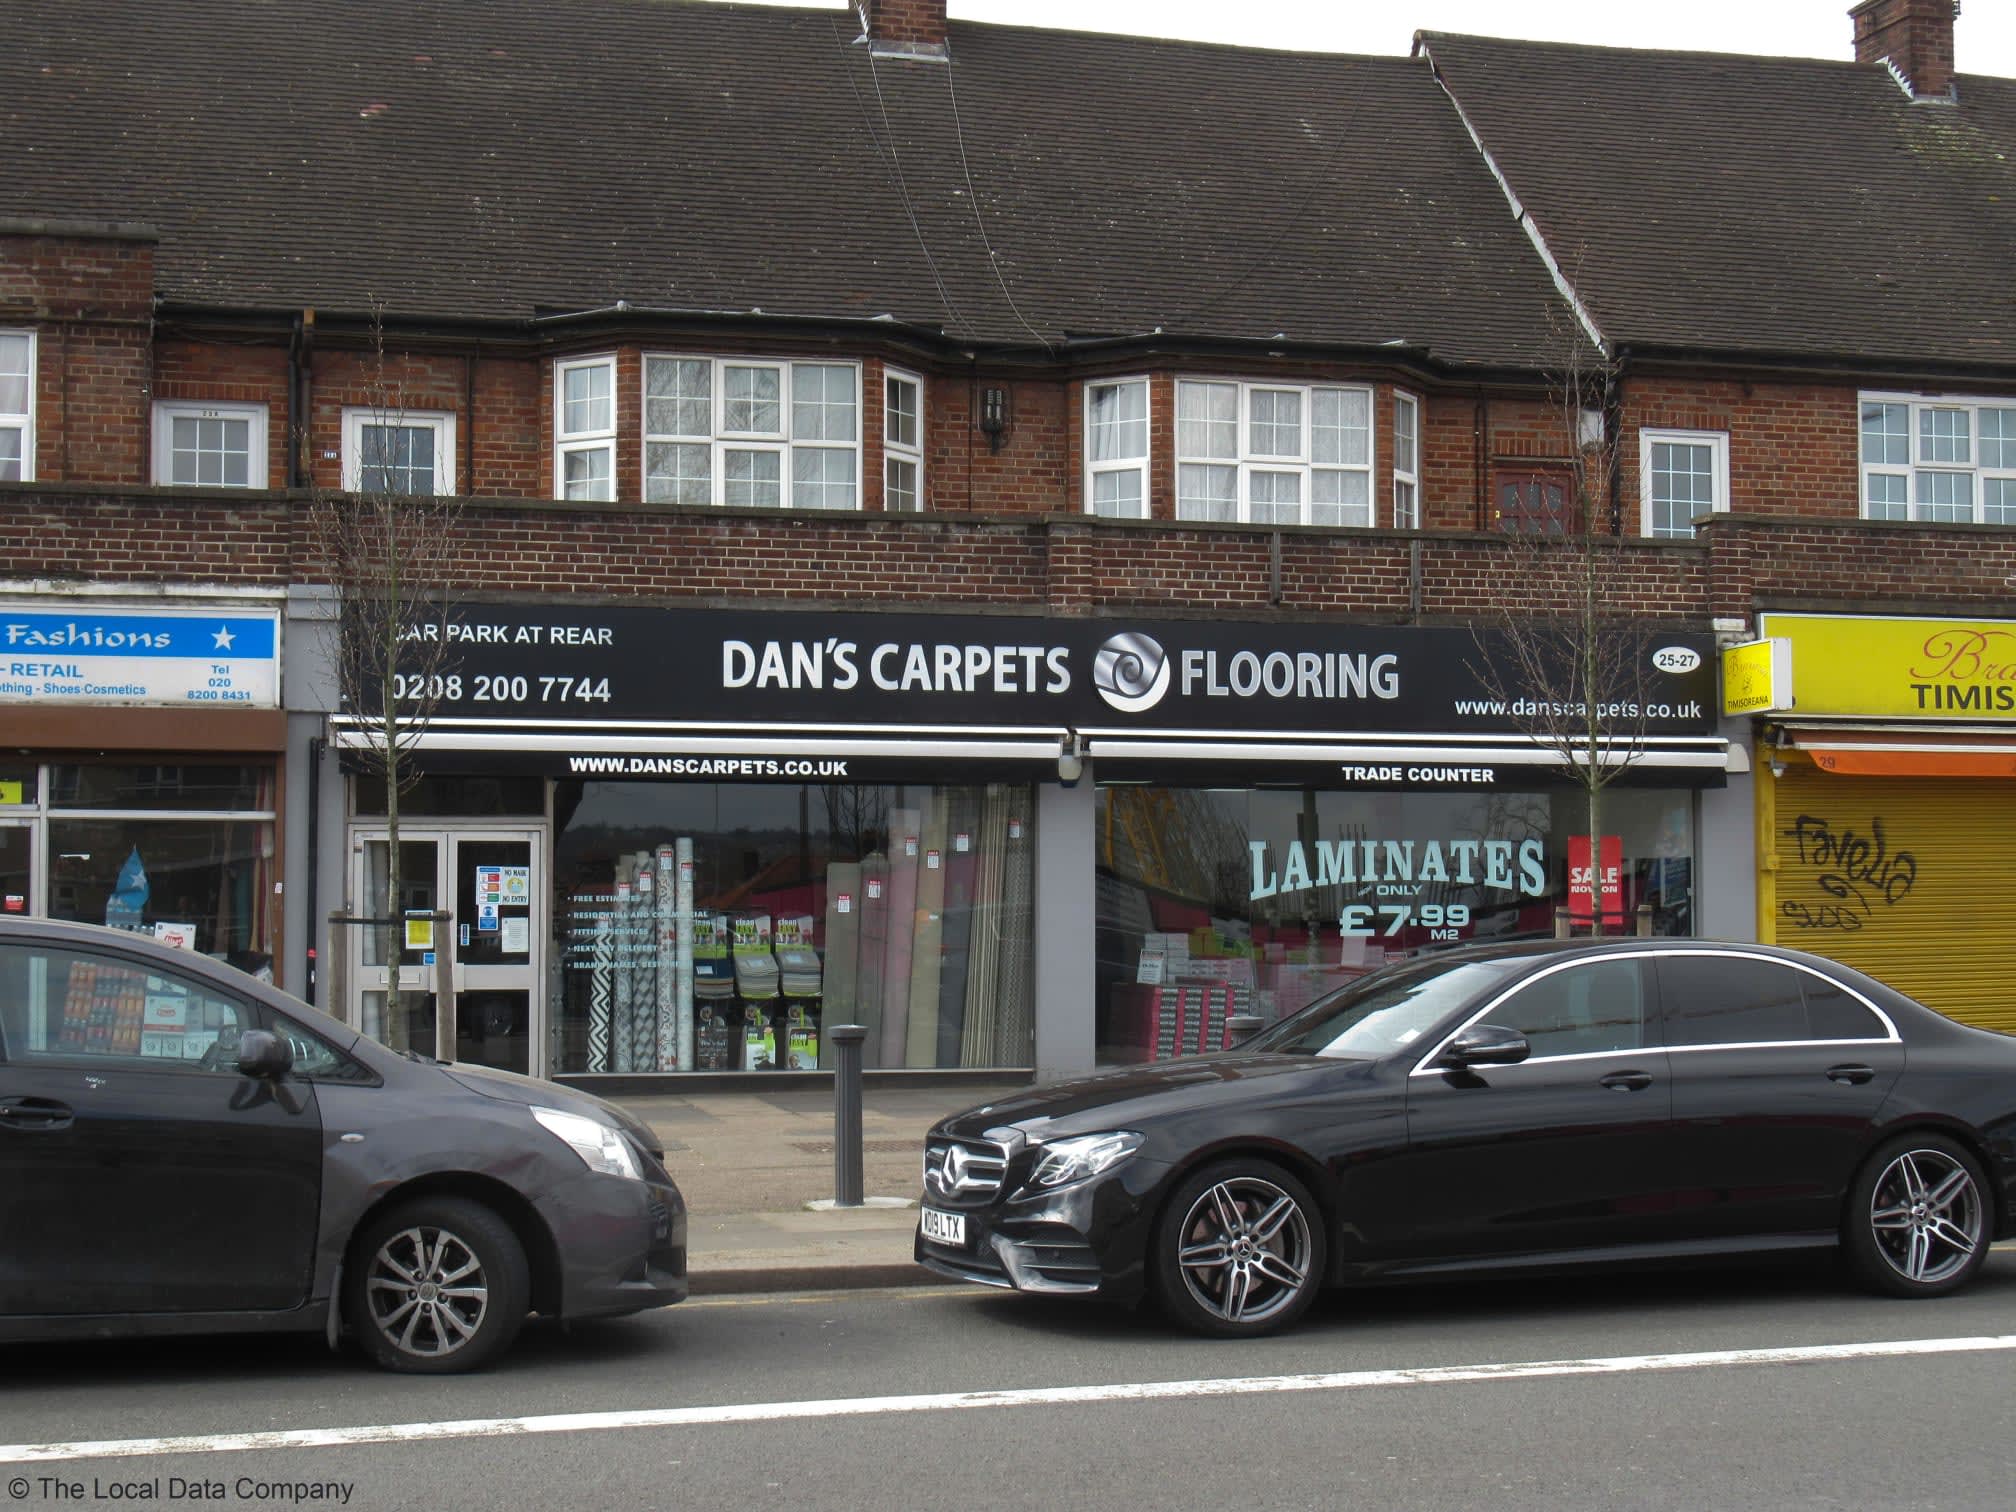 Images Dan's Carpets & Flooring